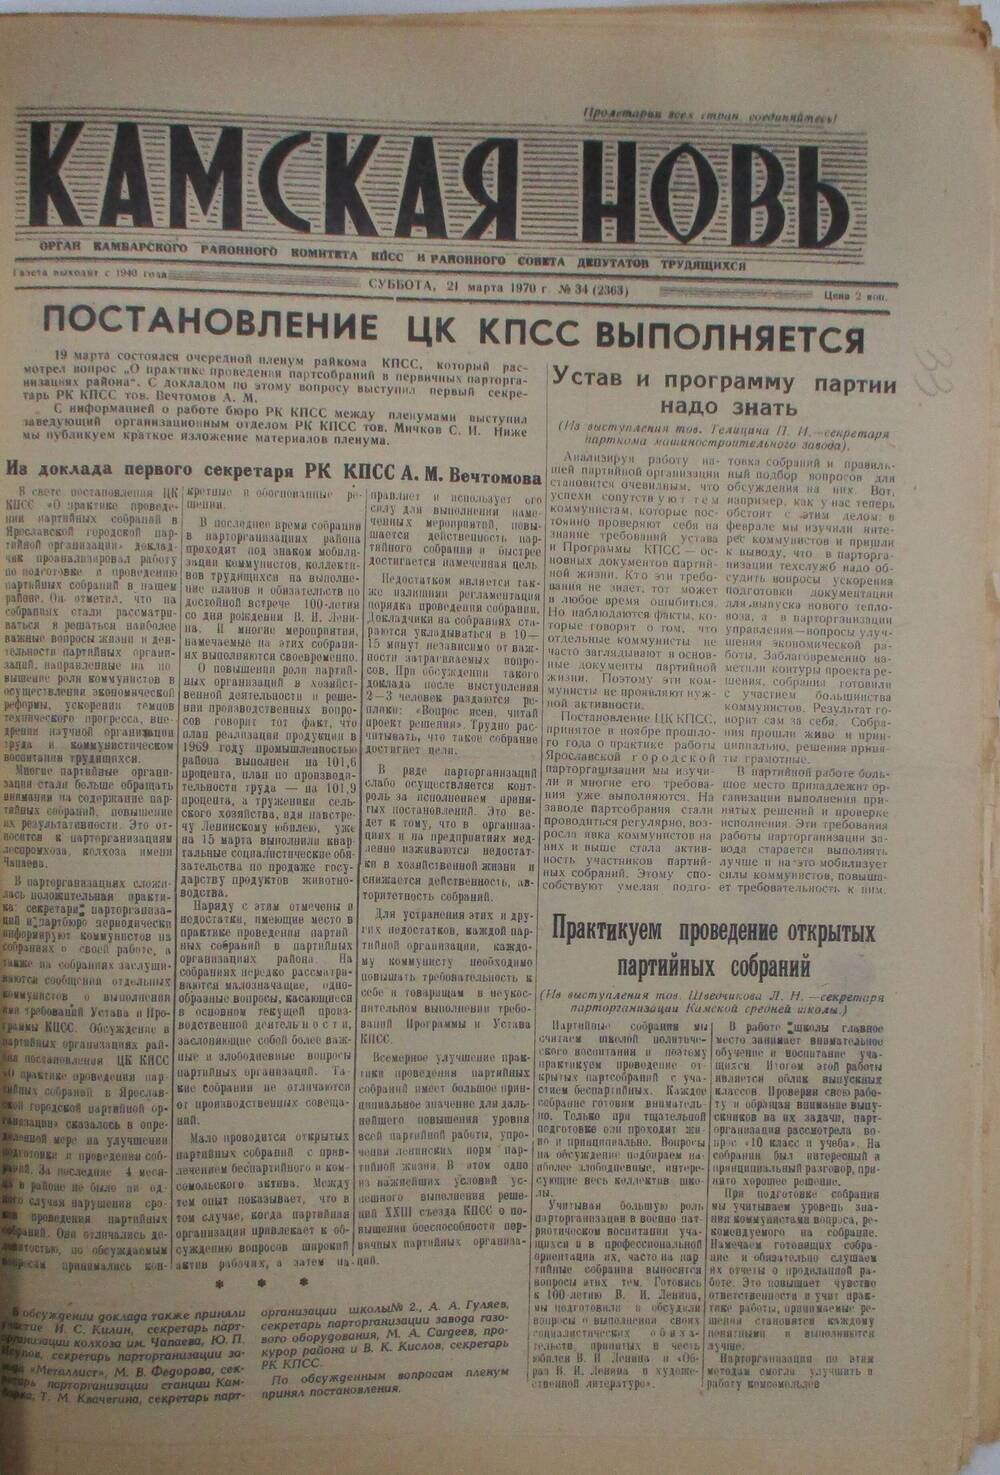 Газеты Камская новь за 1970 год. с №1 по №83., №34.